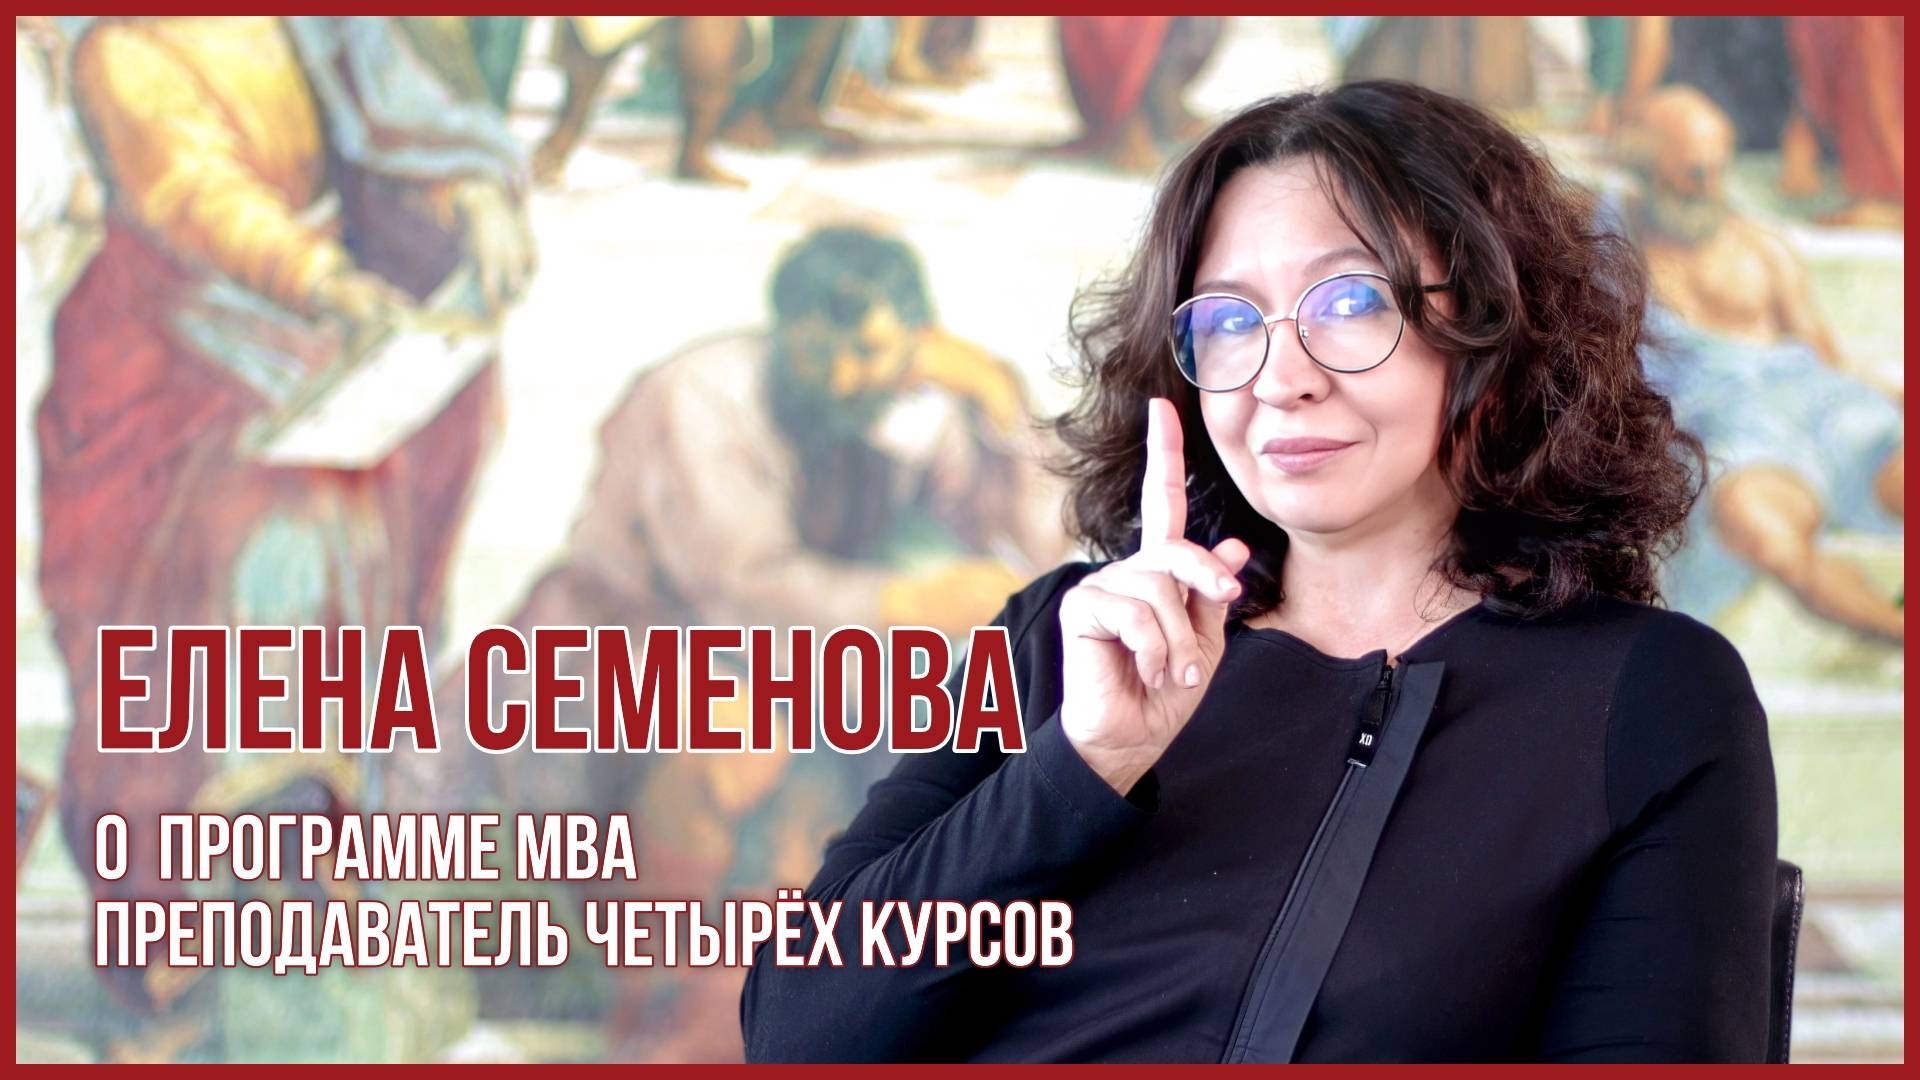 Елена Семенова о программе MBA в USIB